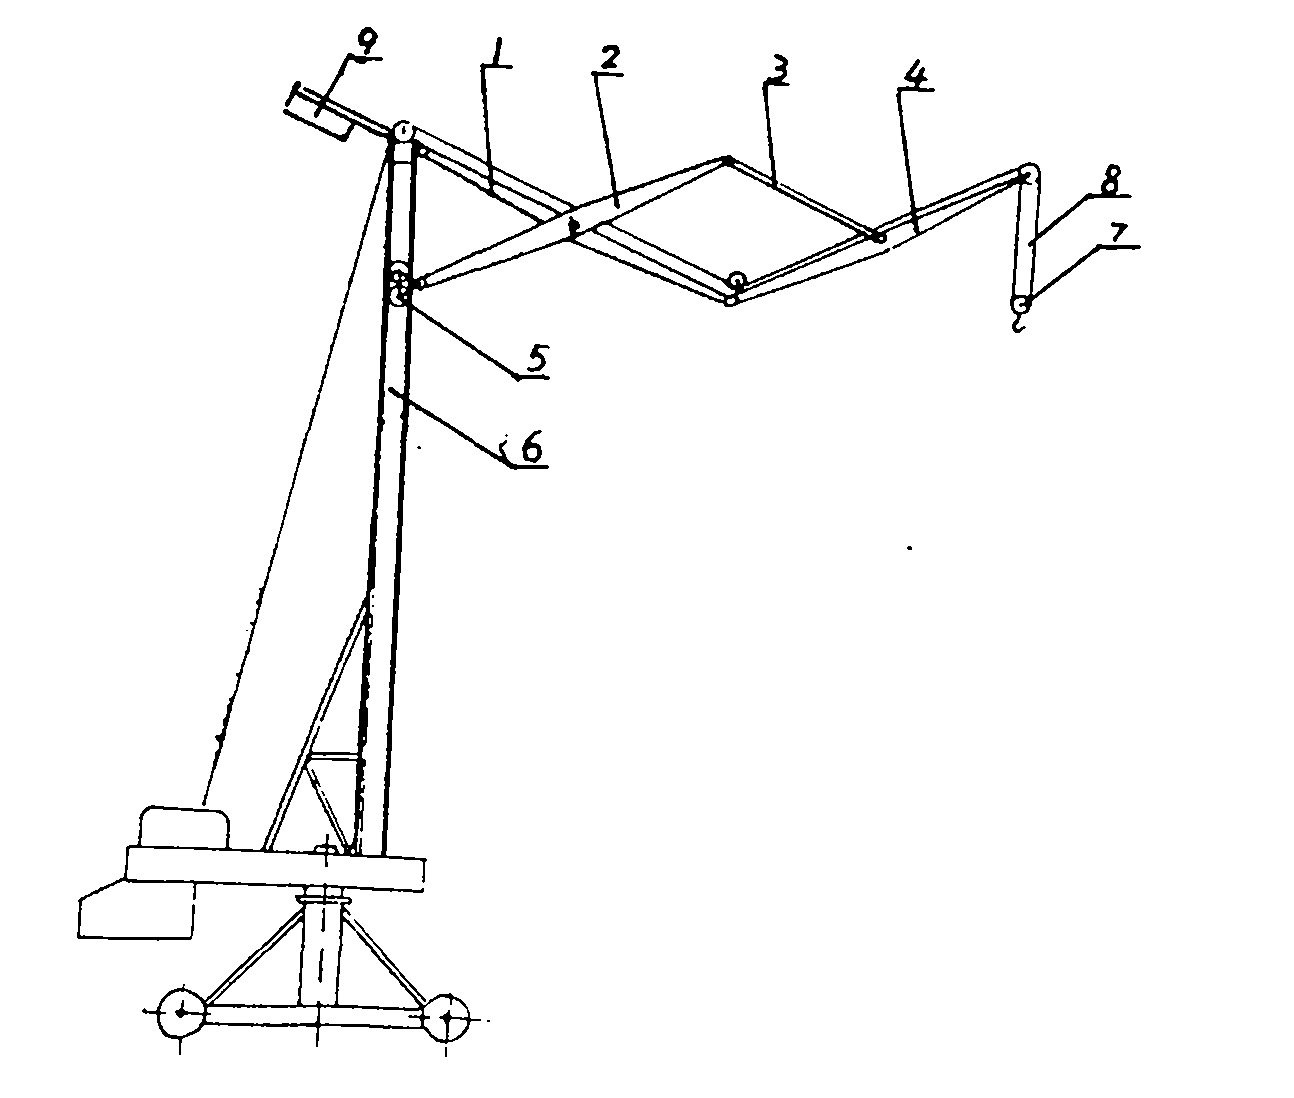 Four-rod-crossing amplitude compensation device